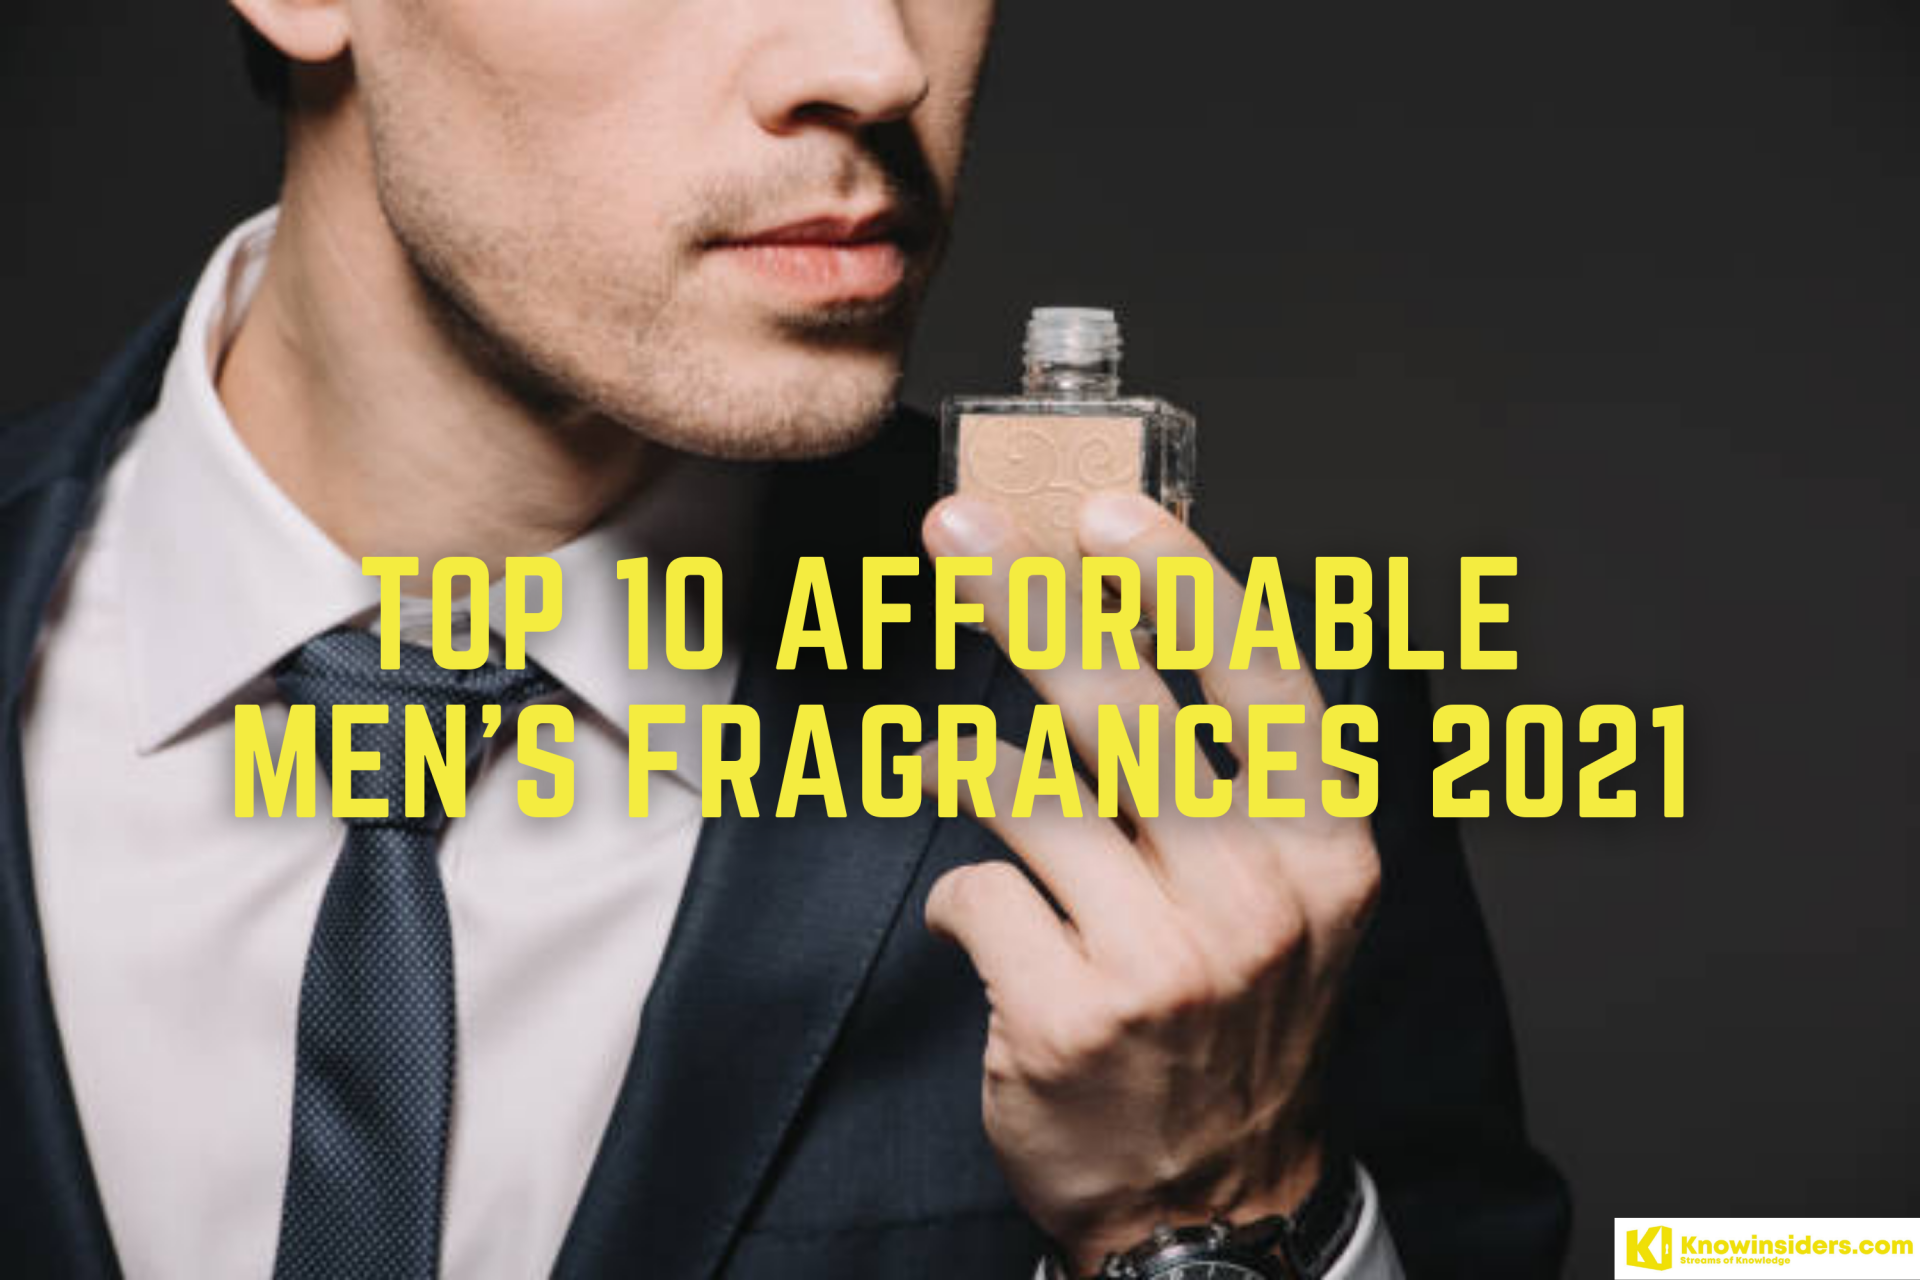 Top 10 Affordable Fragrances for Men 2021/2022